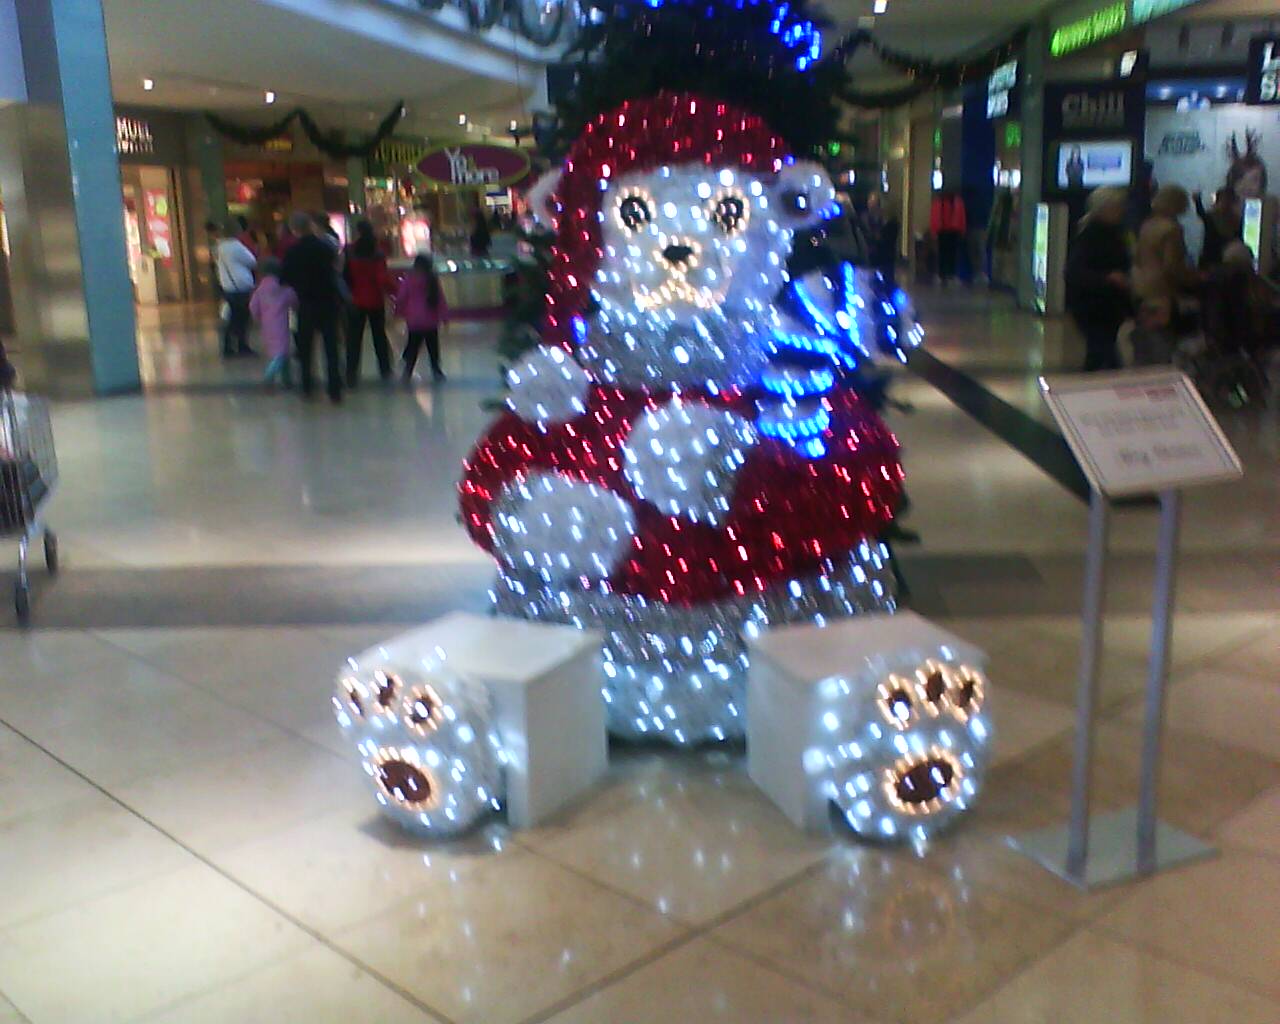 Christmas-at-the-mall-christmas-26571377-1280-1024.jpg